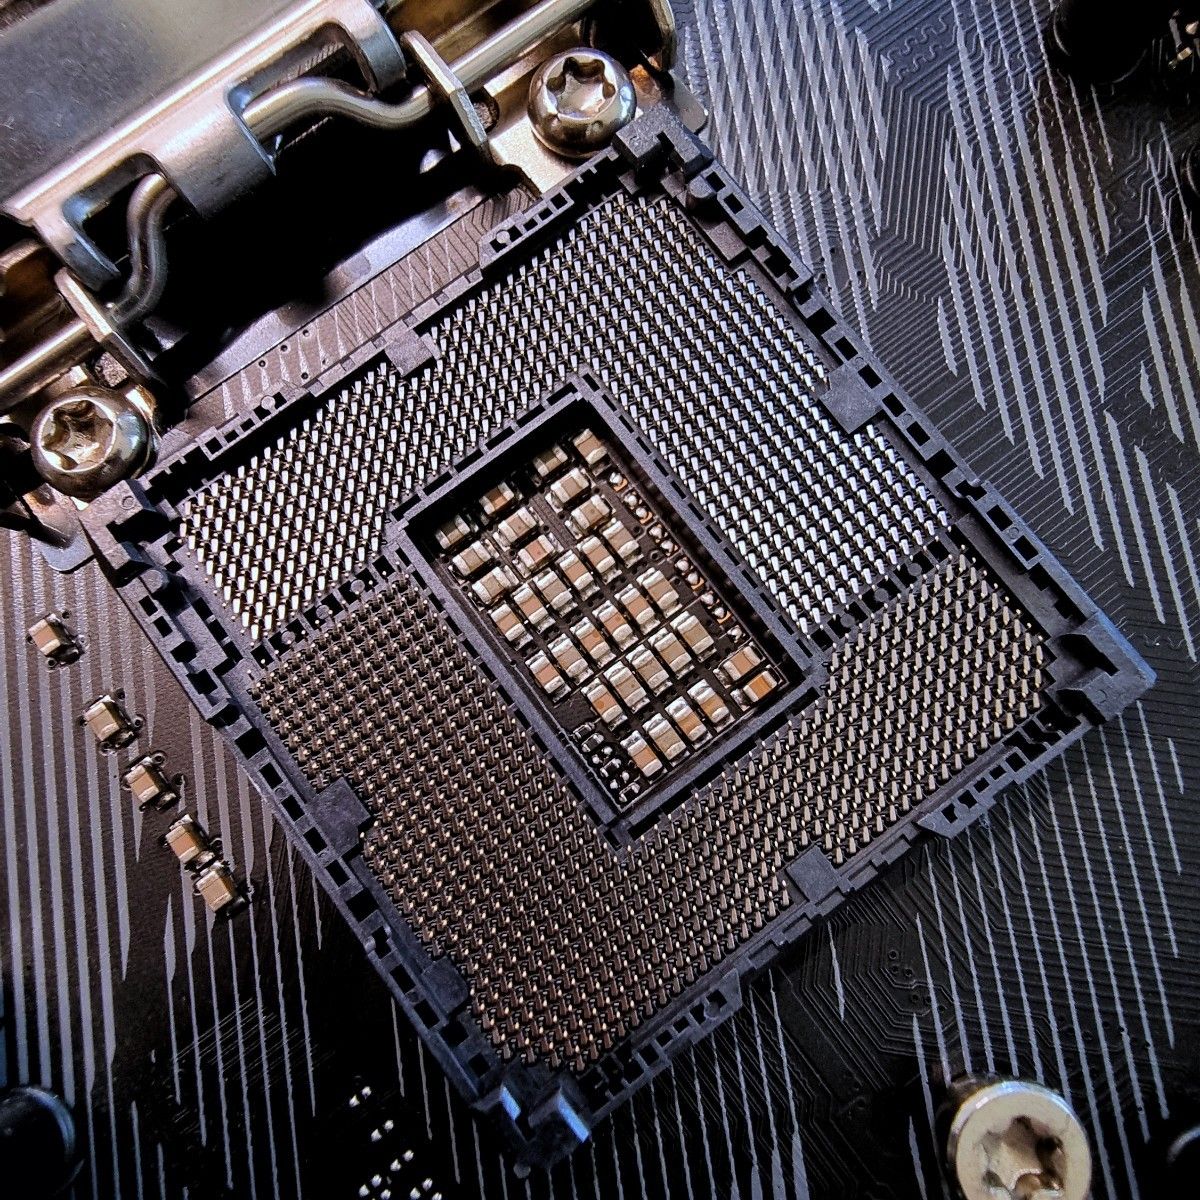 ASUS Intel Z370搭載 マザーボード LGA1151対応 ROG STRIX Z370-G GAMING 【mATX】